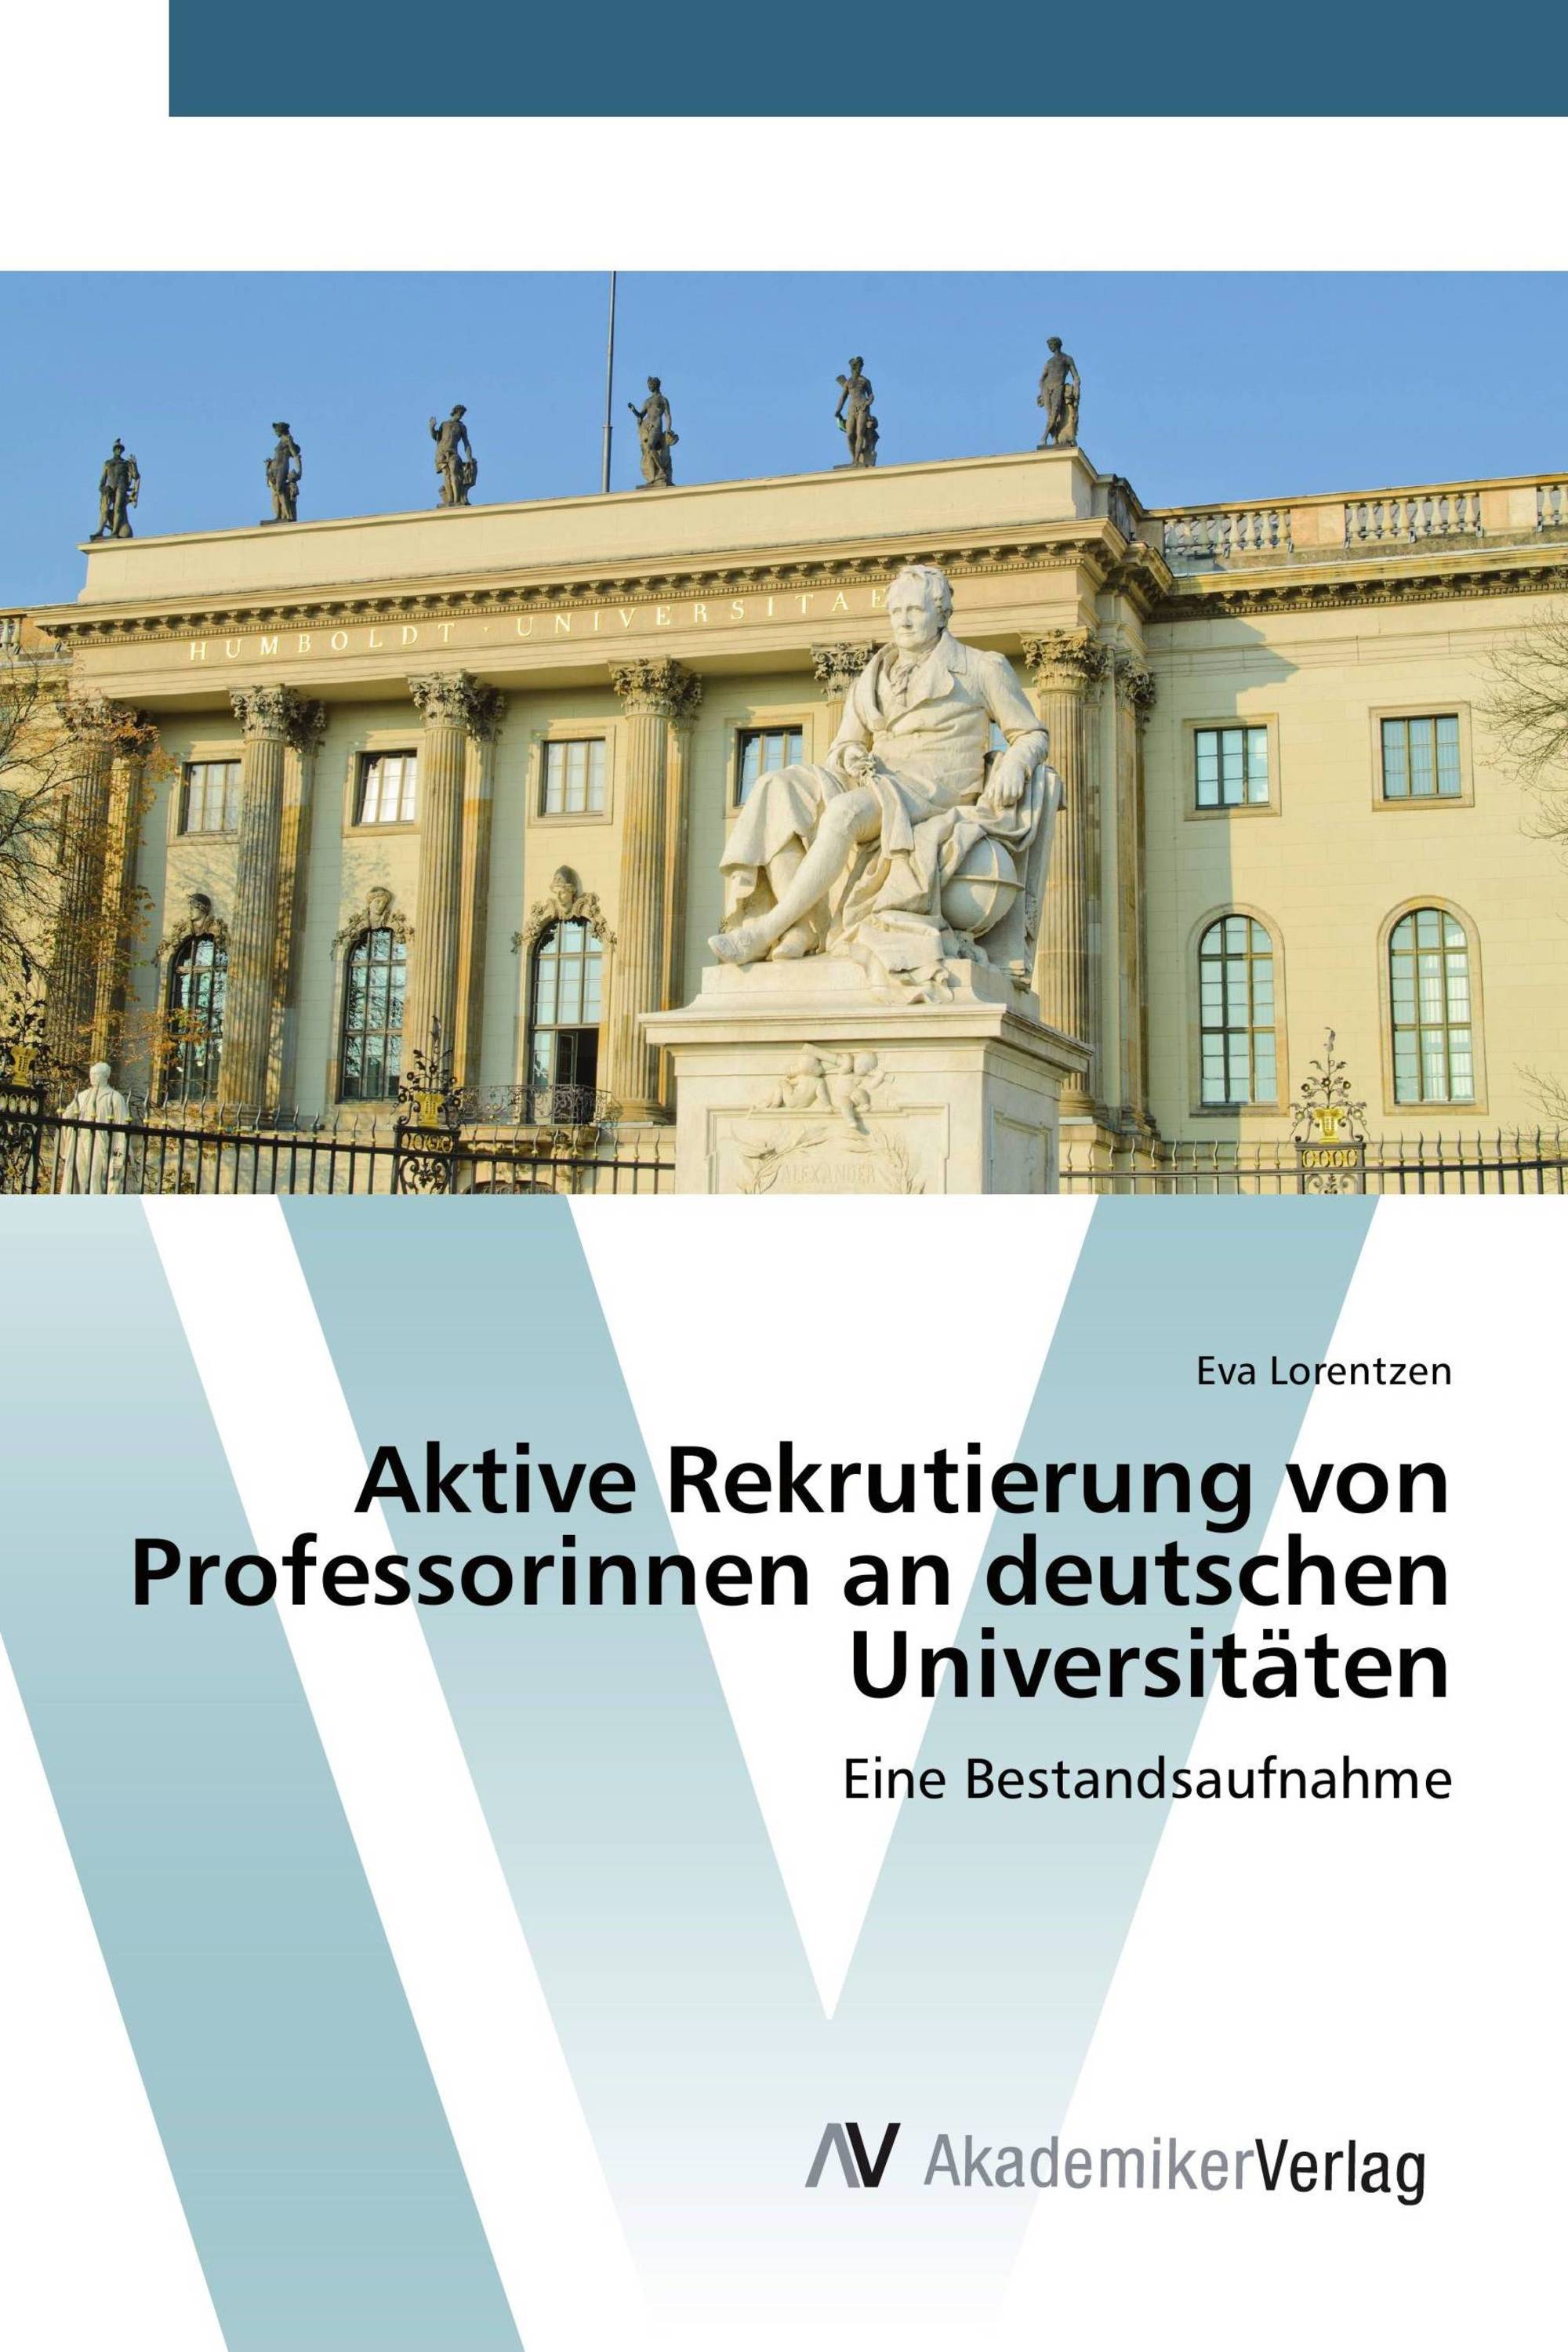 Aktive Rekrutierung von Professorinnen an deutschen Universitäten